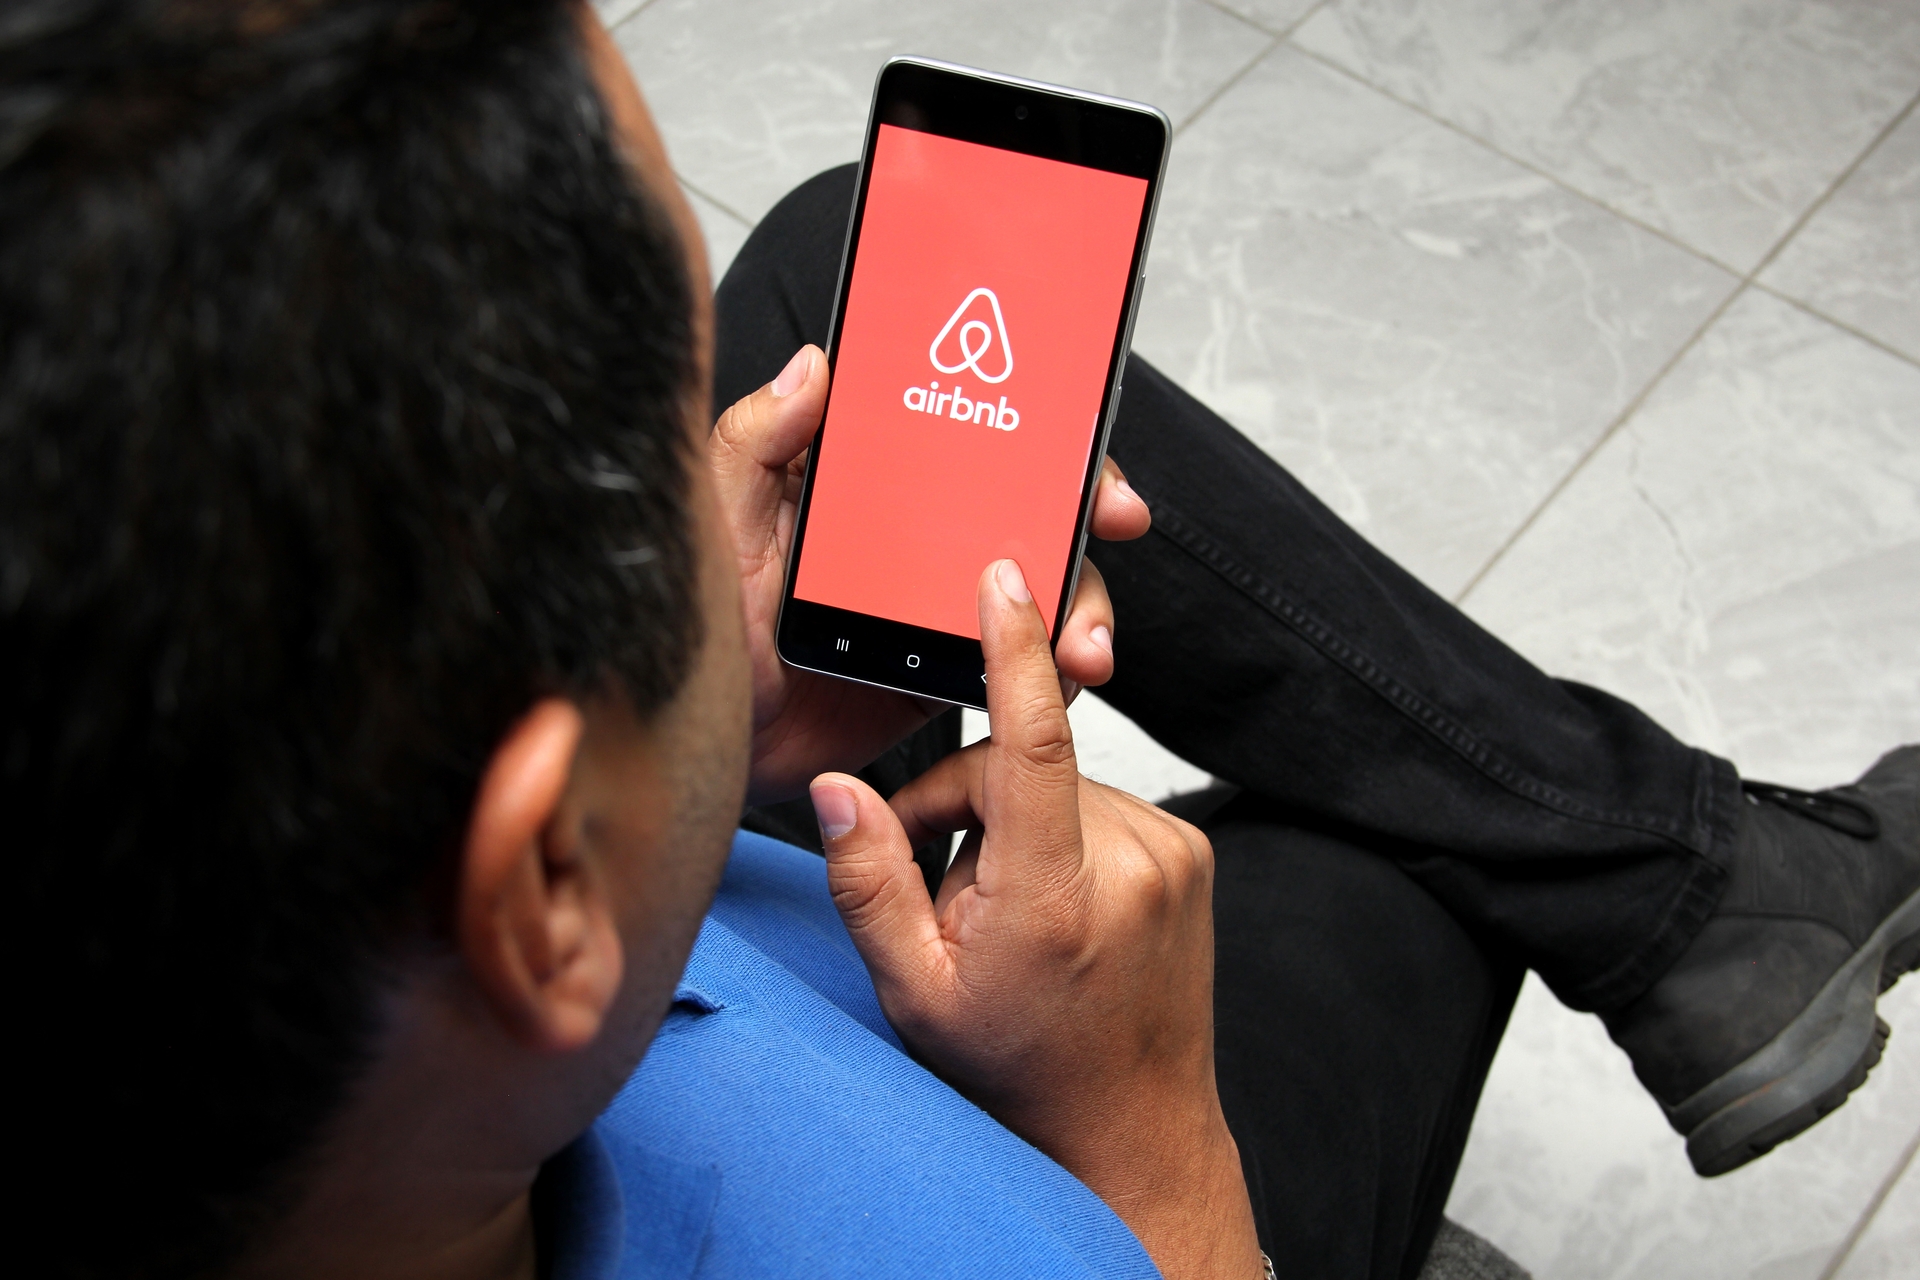 Comment Airbnb veut apaiser les tensions entre hôtes et clients